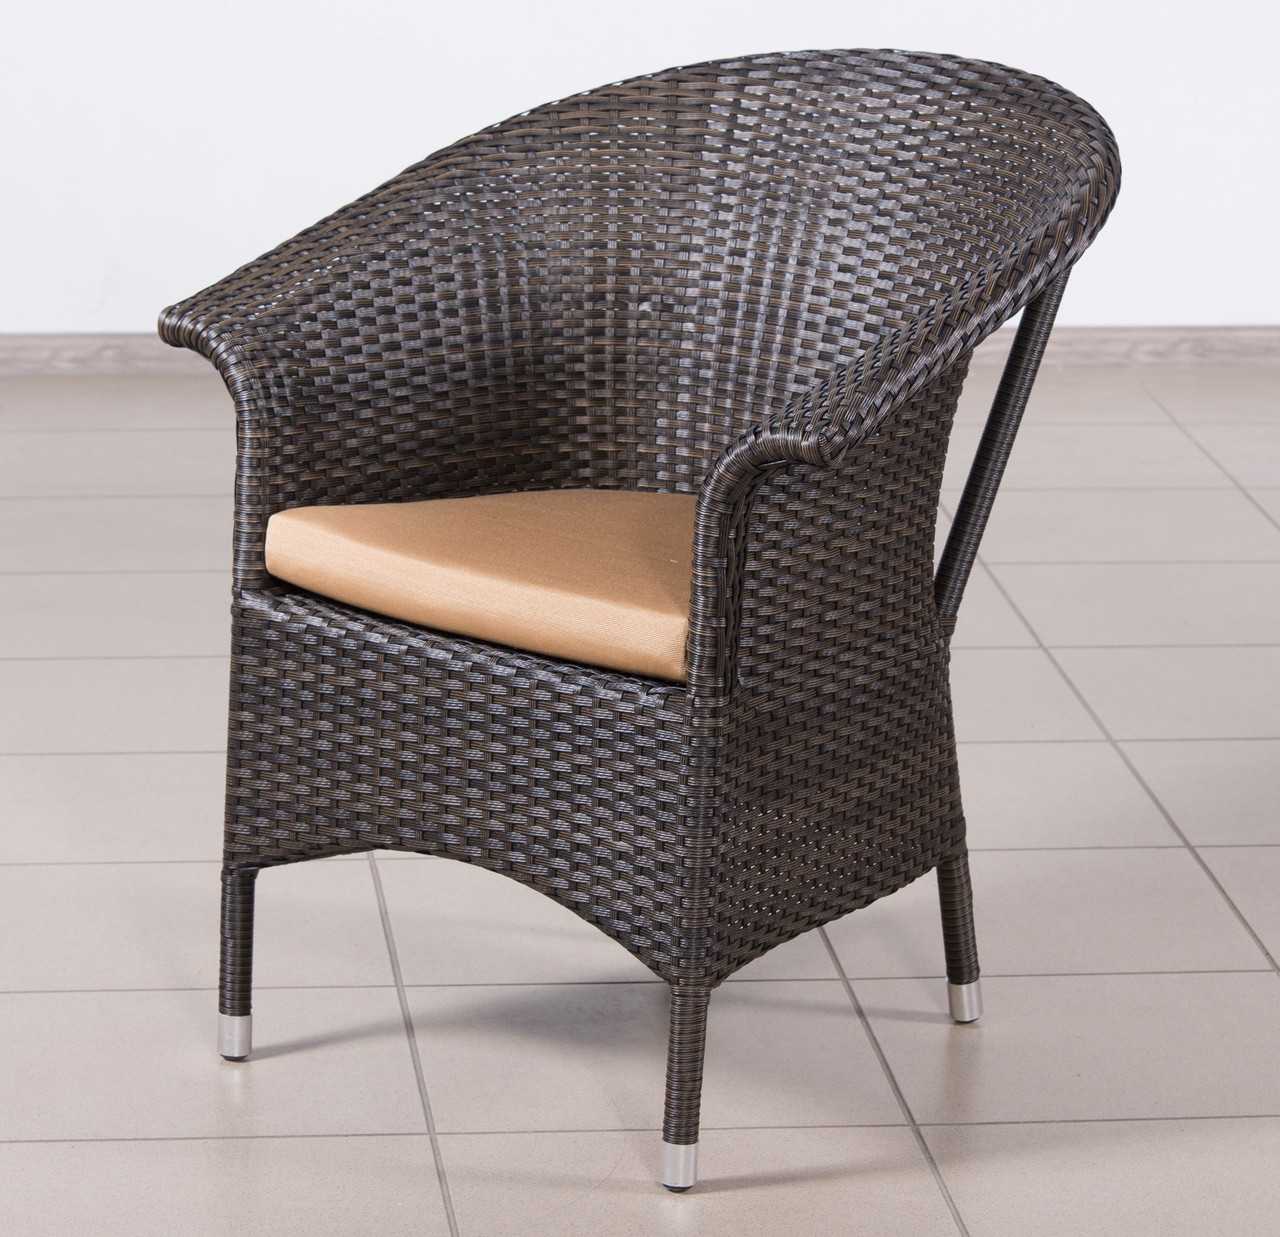 Плетеные стулья из ротанга — особенности, правила выбора и эксплуатации